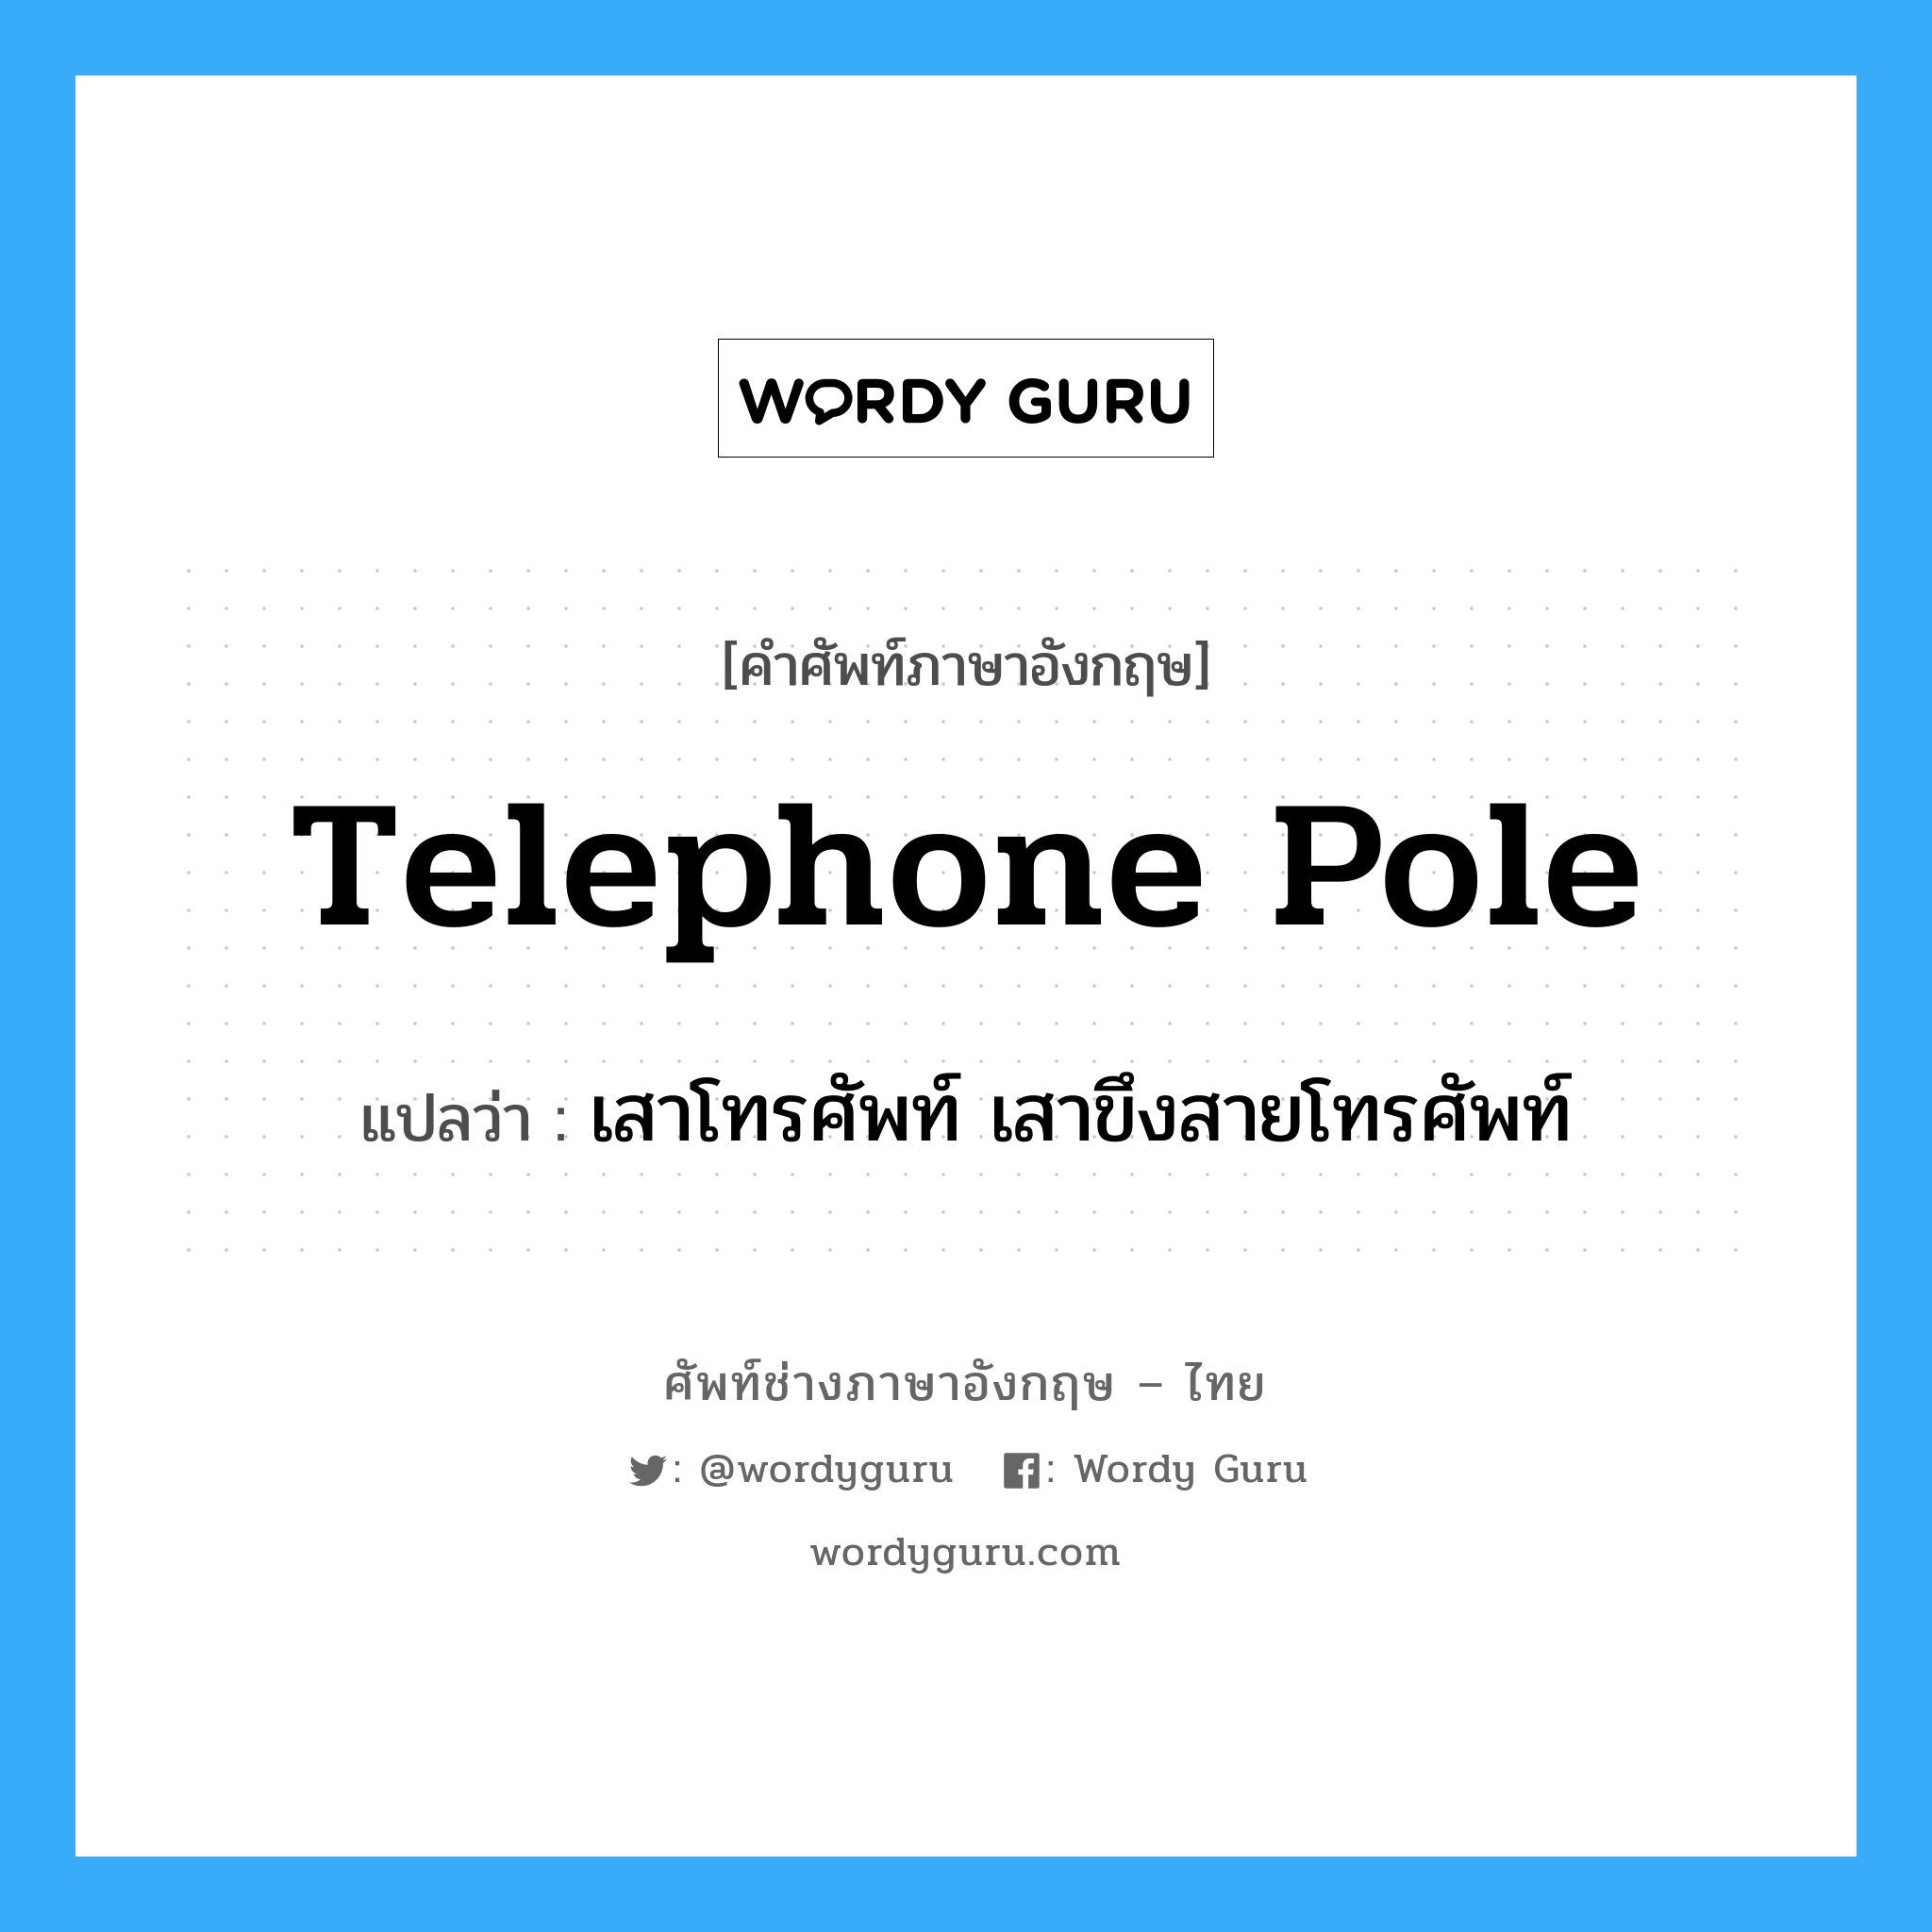 telephone pole แปลว่า?, คำศัพท์ช่างภาษาอังกฤษ - ไทย telephone pole คำศัพท์ภาษาอังกฤษ telephone pole แปลว่า เสาโทรศัพท์ เสาขึงสายโทรศัพท์